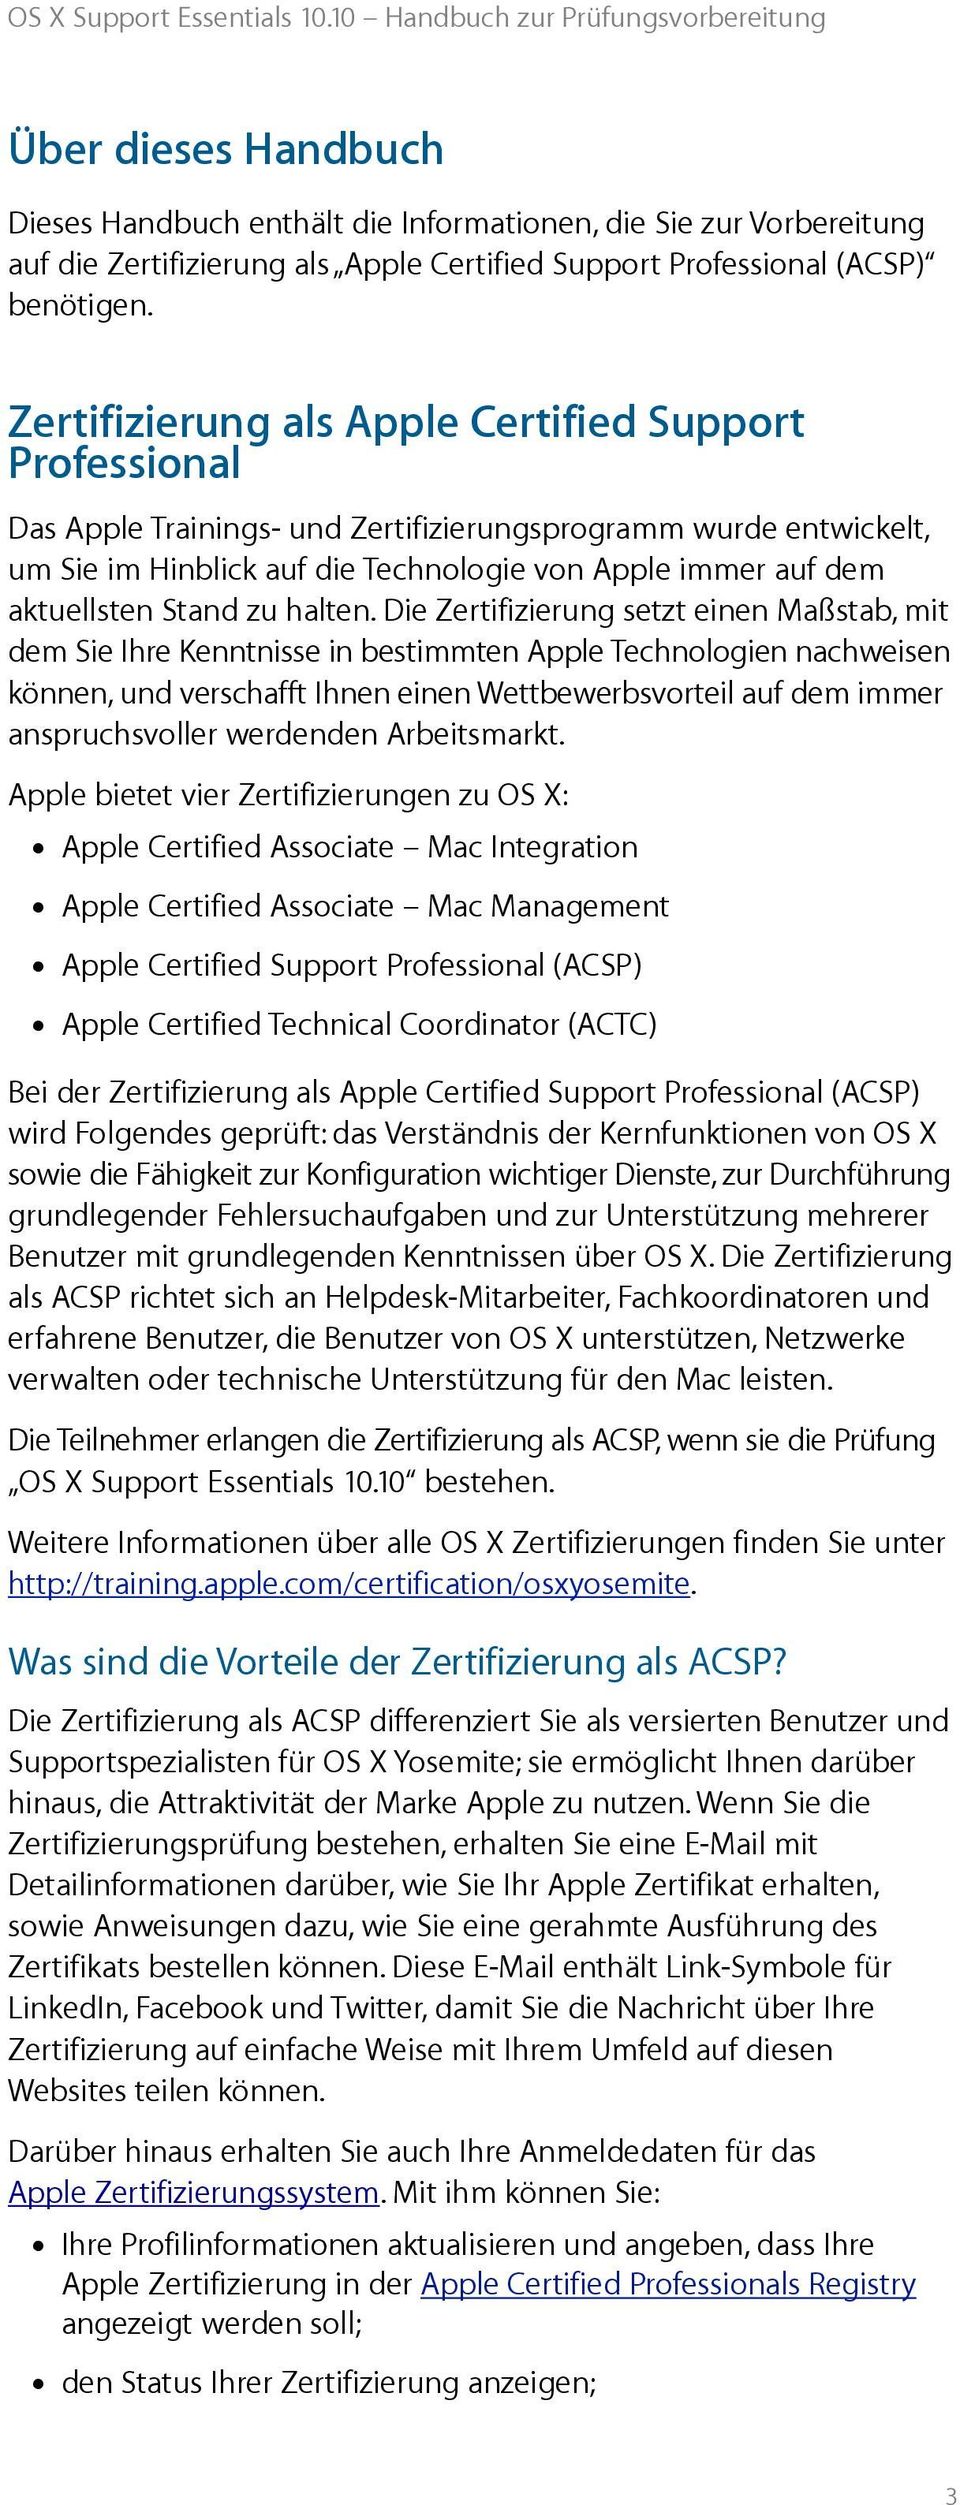 Os X Support Essentials Handbuch Zur Prufungsvorbereitung Pdf